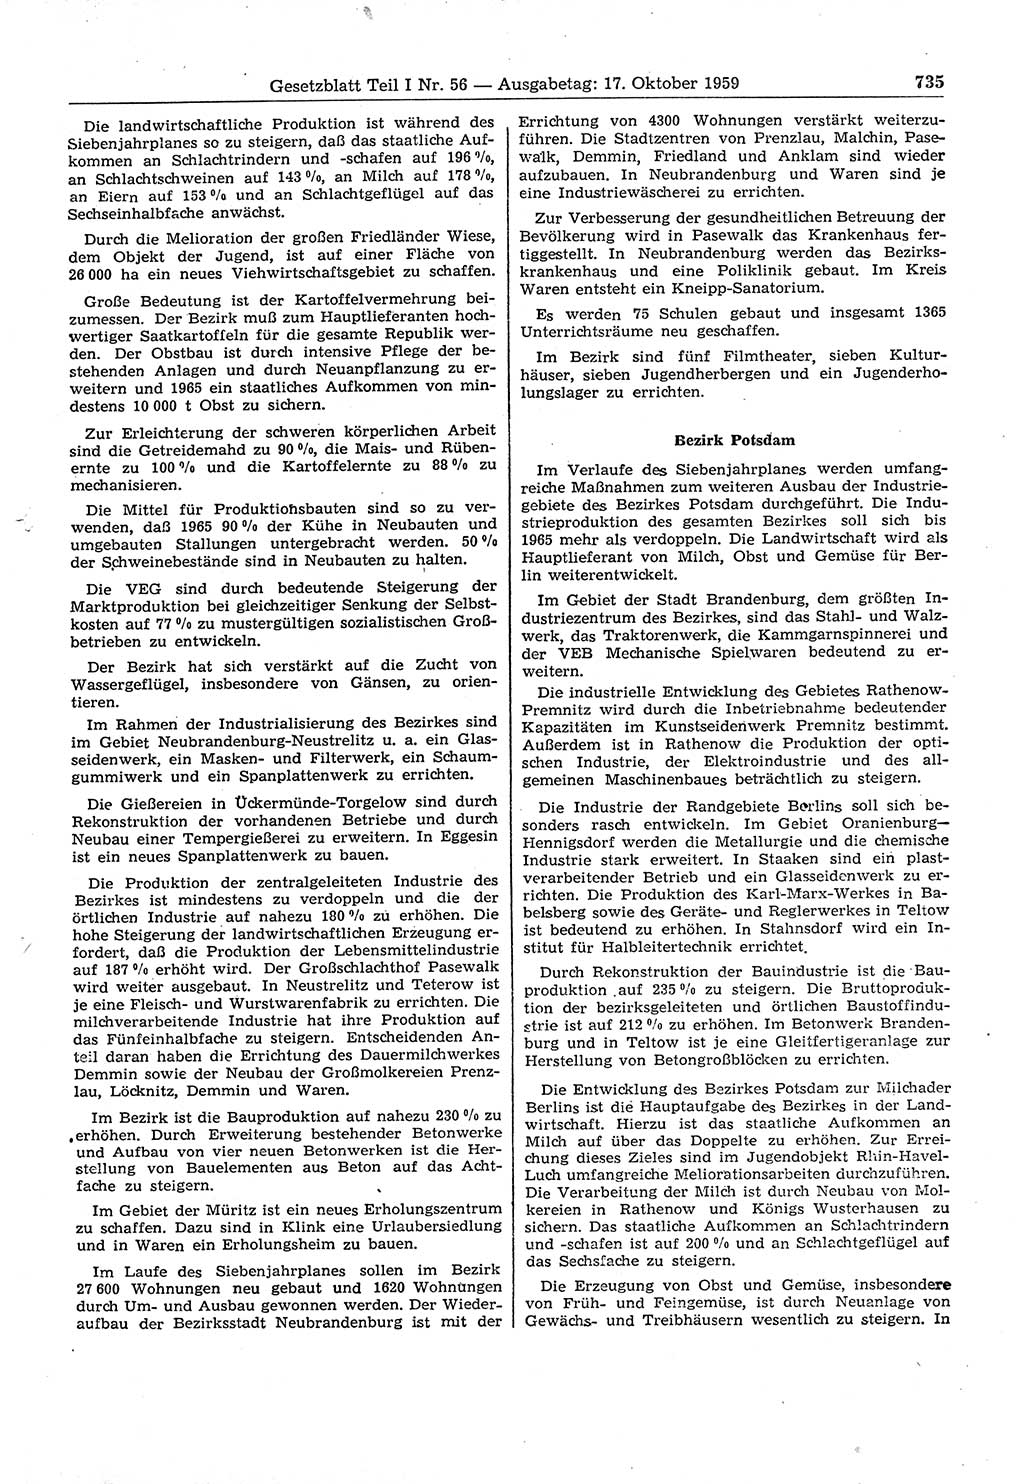 Gesetzblatt (GBl.) der Deutschen Demokratischen Republik (DDR) Teil Ⅰ 1959, Seite 735 (GBl. DDR Ⅰ 1959, S. 735)